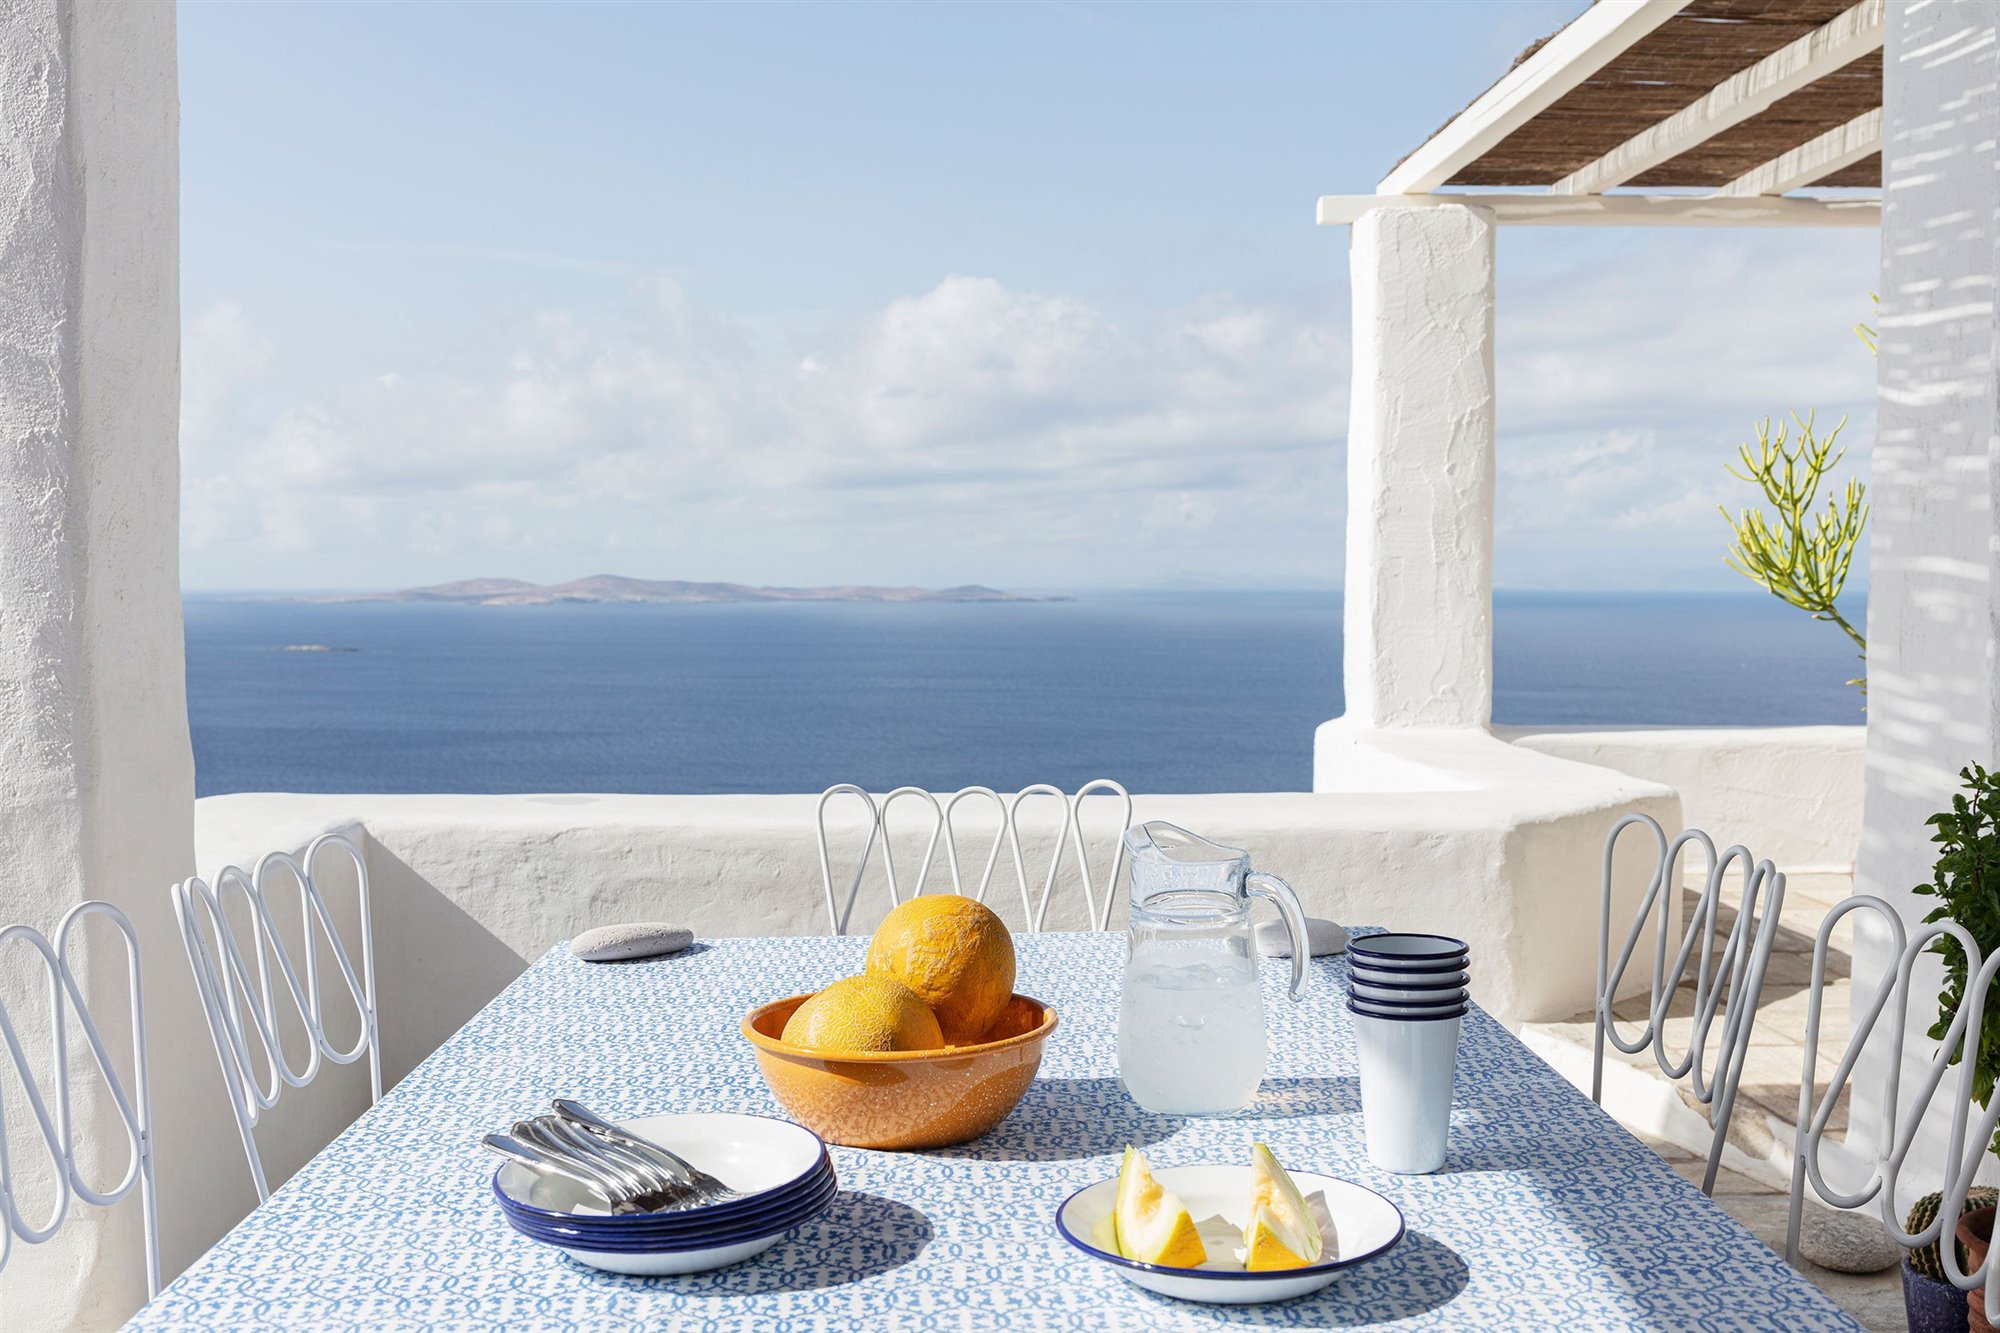 Casa de verano con fachada blanca en el mediterraneo en la isla de Mykonos comedor exterior con vistas al mar